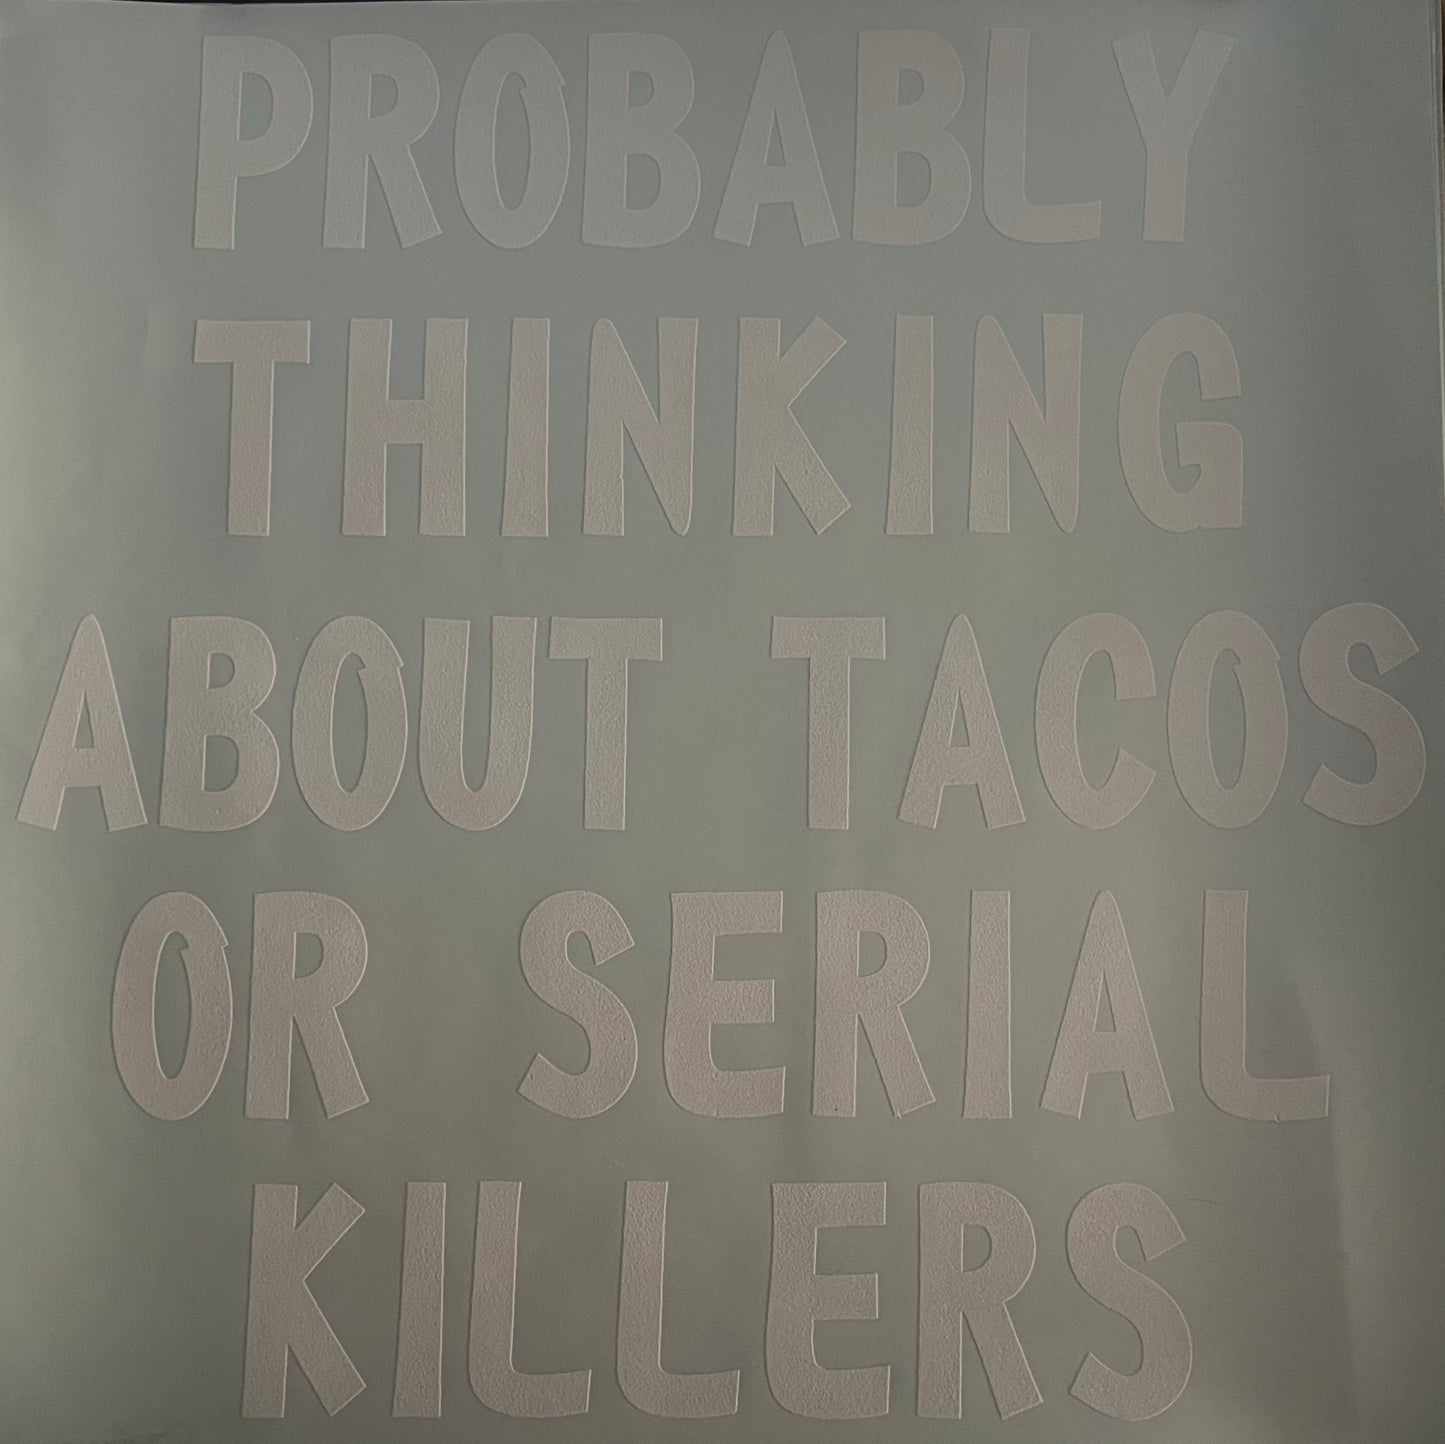 Tacos & Serial Killers